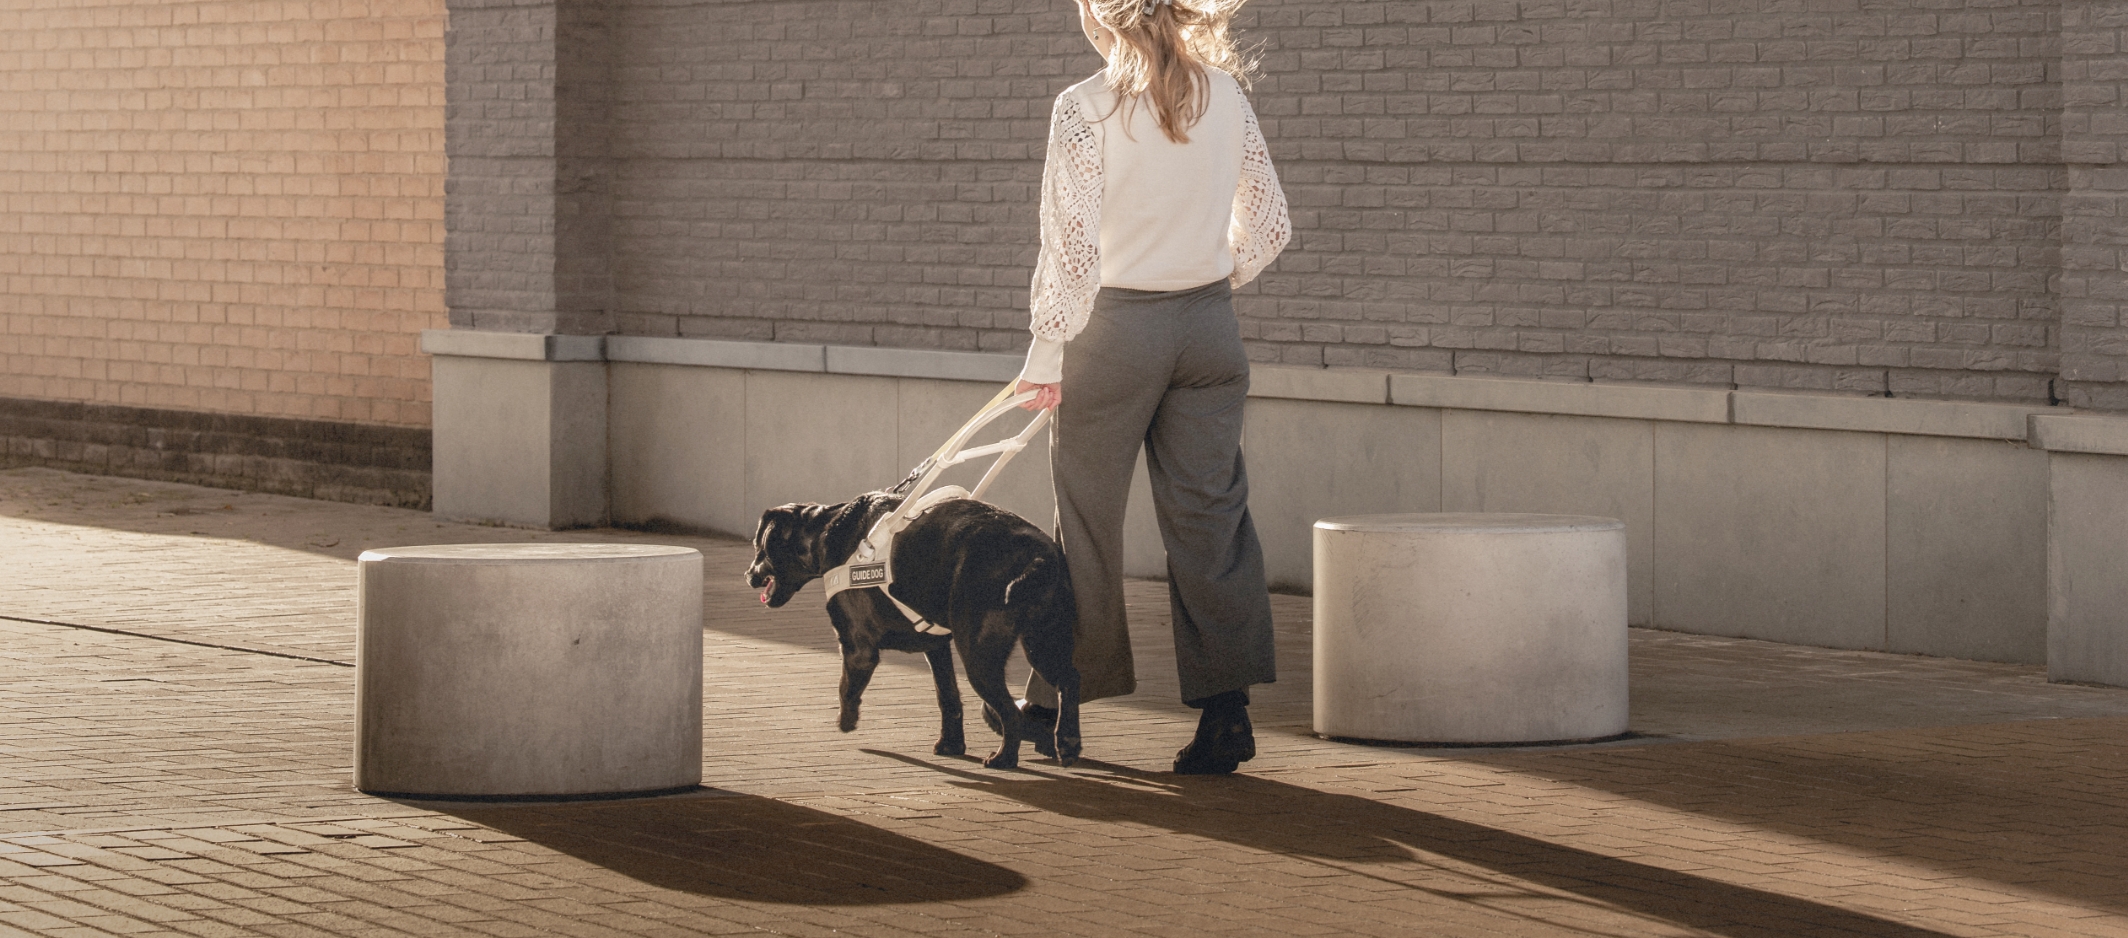 Afbeelding van een dame en zwarte blindengeleidehond die wegwandelen van de camera onder de neergaande zon. De dame heeft blond haar en is gekleed in een witte bloes met grijs geklede broek. Ze bevinden zich voor een muur van een gebouw in een woongebied.